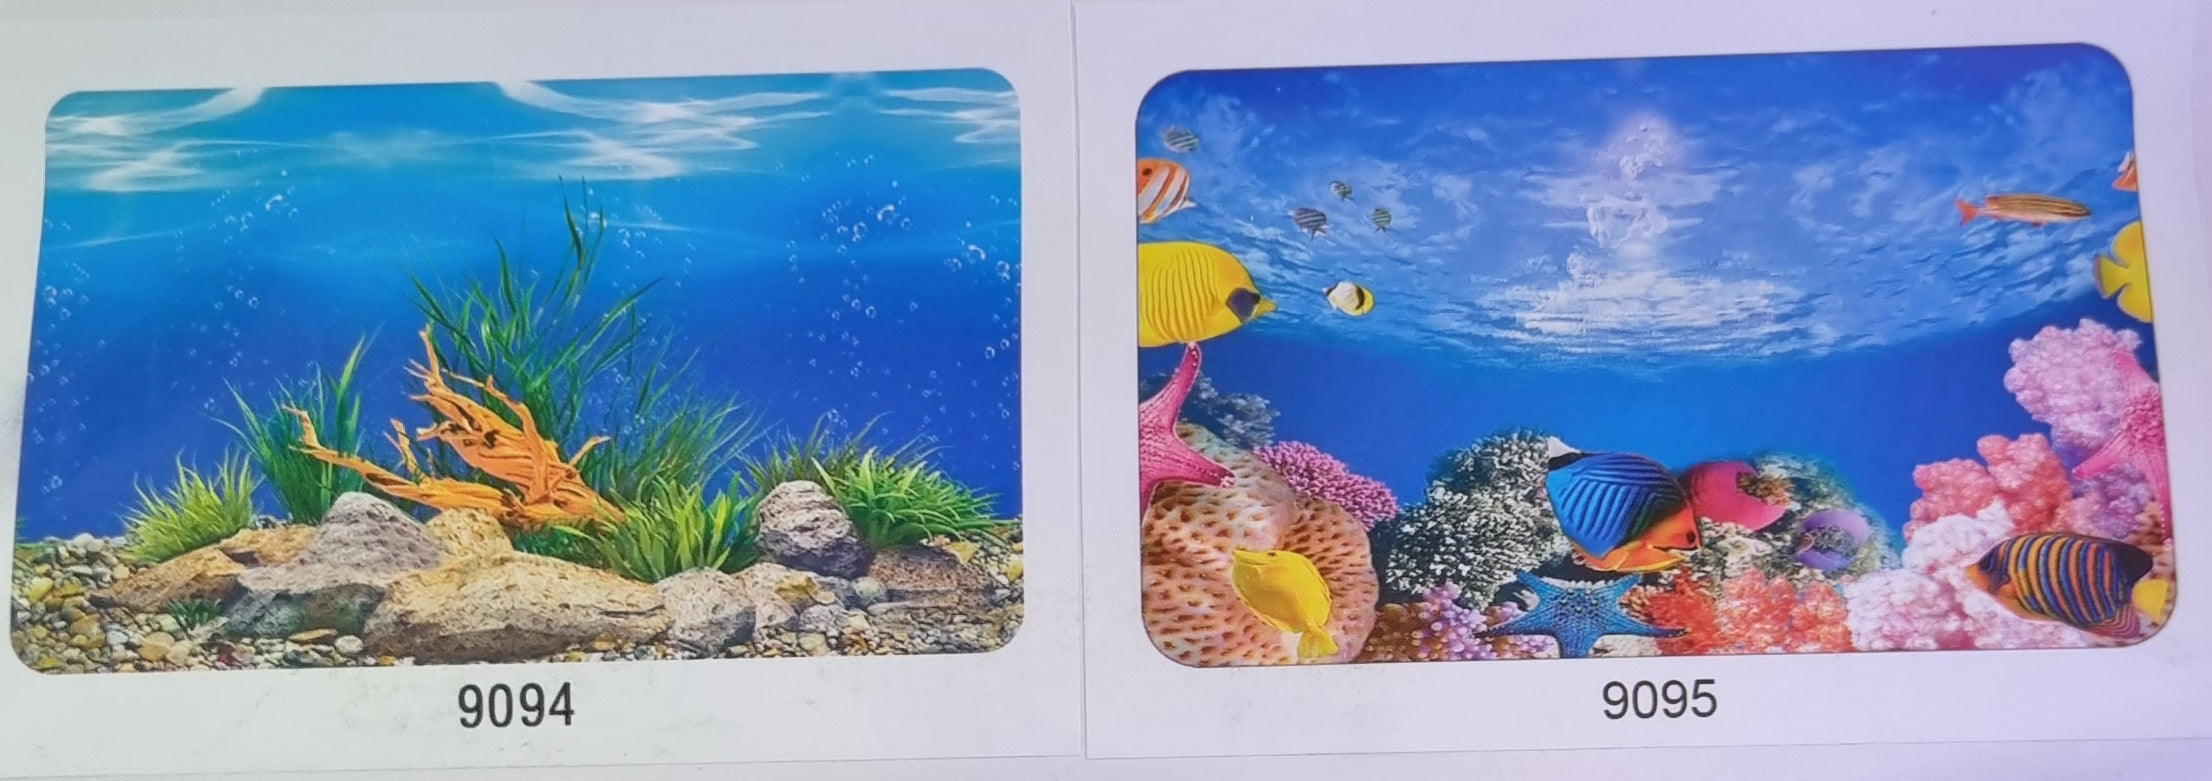 Aquarium Backgrounds 40cm